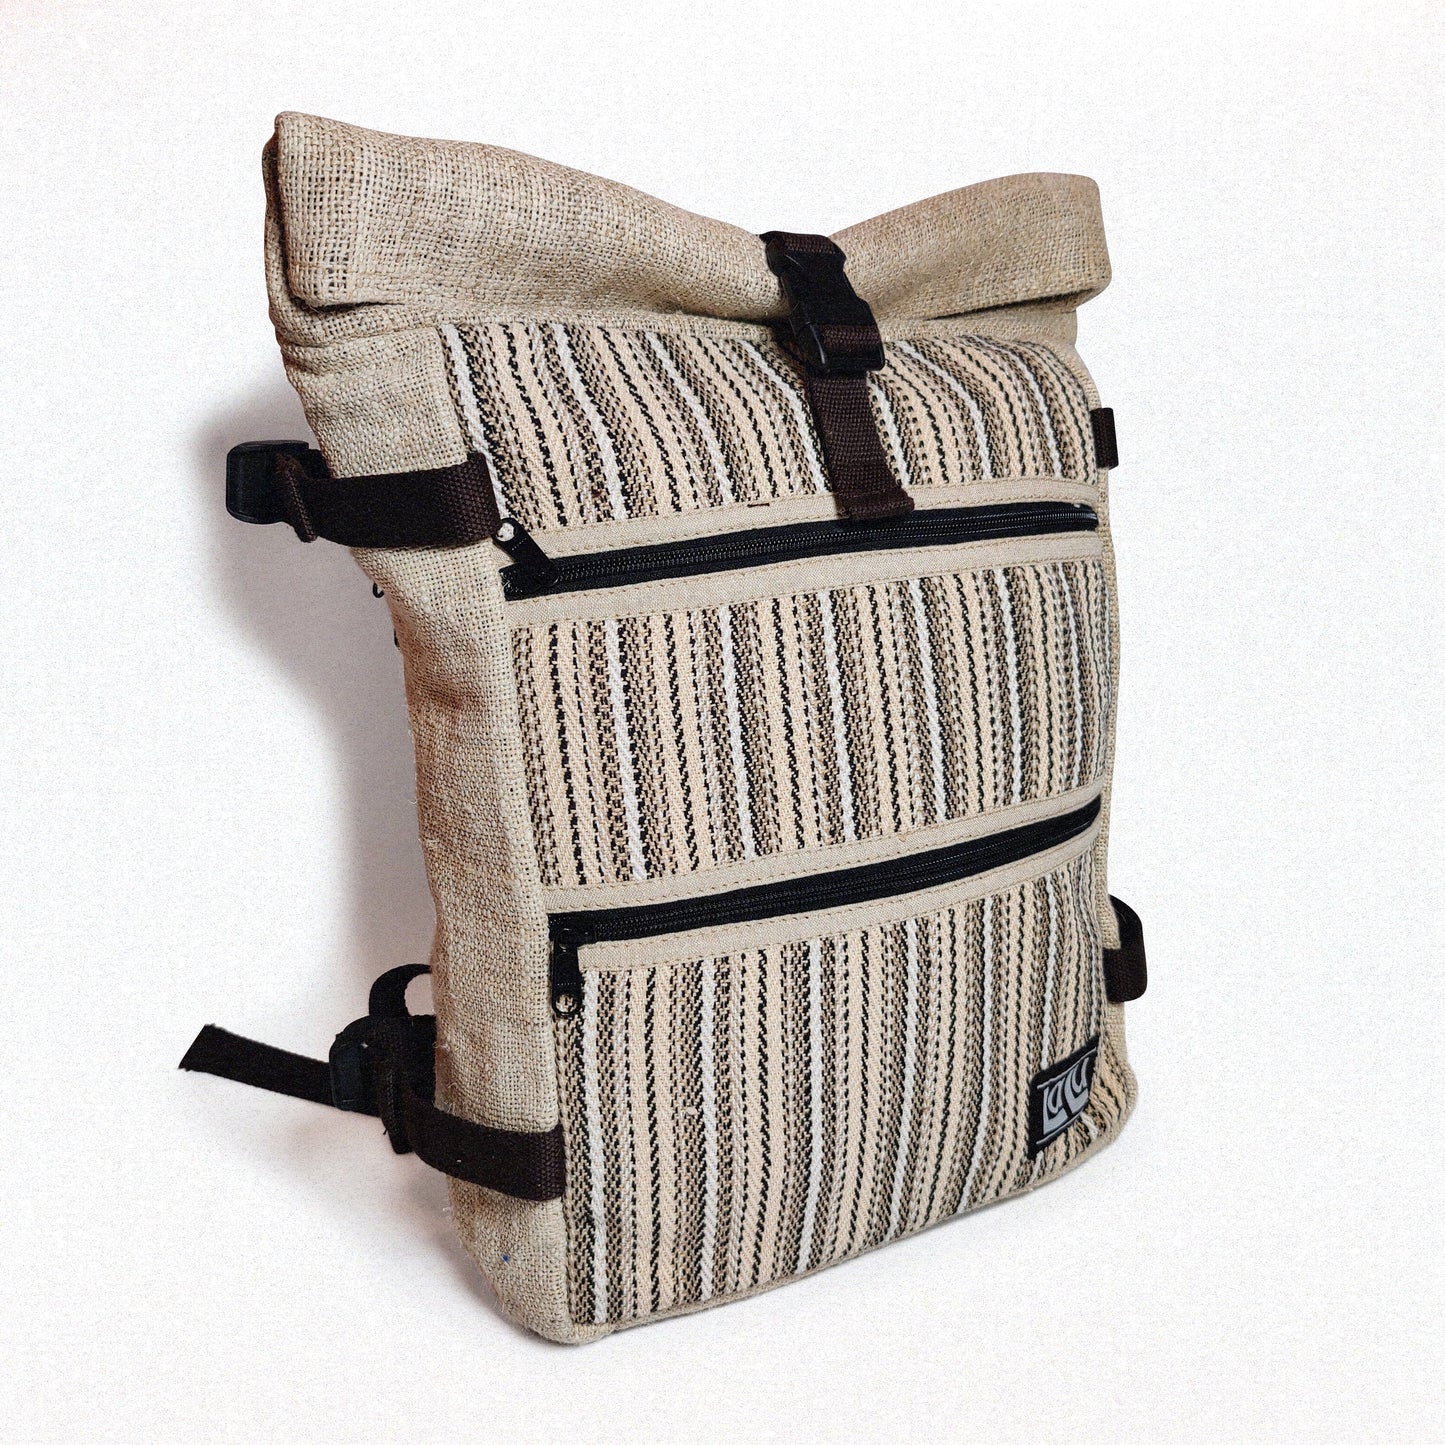 Rucksack mit Basanti-Streifen | Bio-Hanf und Baumwolle